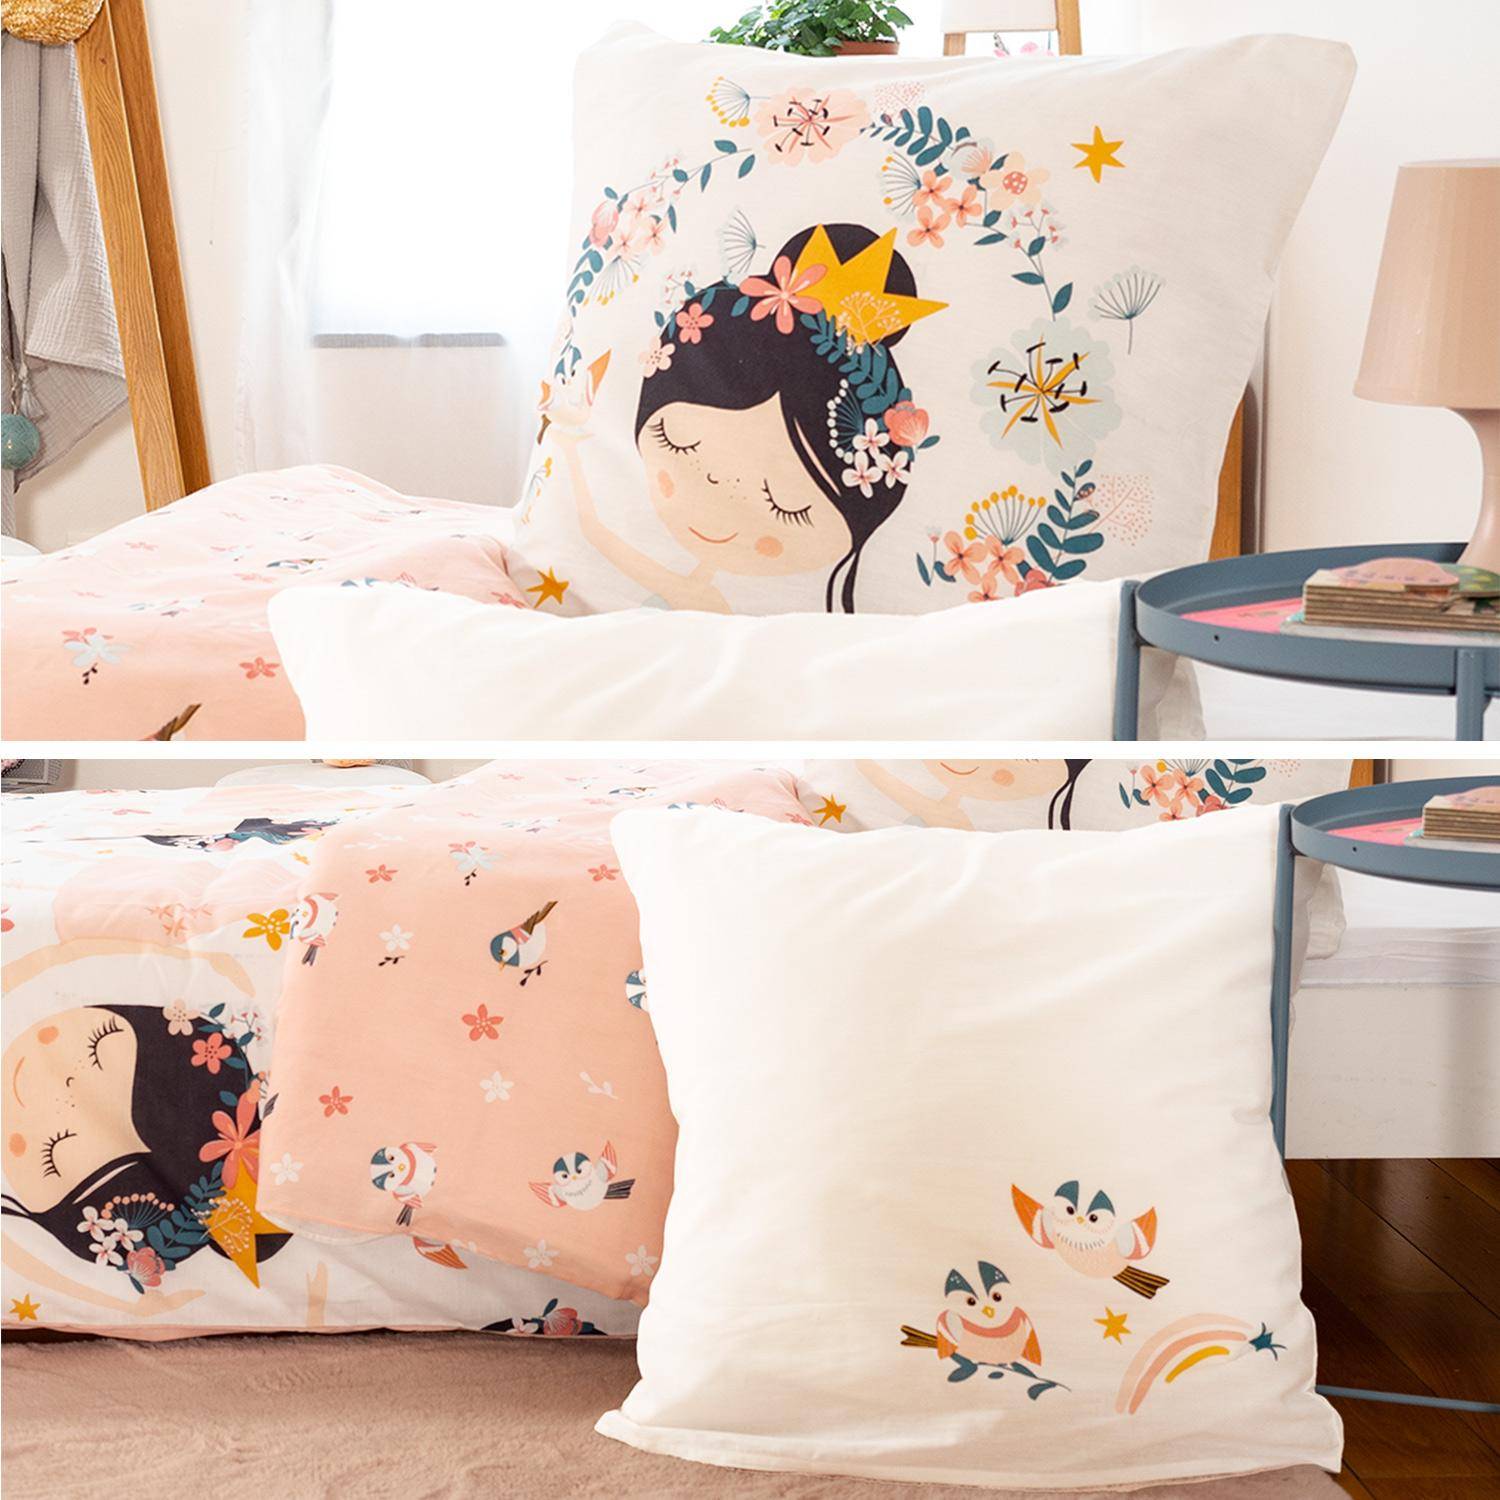 Wendebettwäsche für 1 Person mit Prinzessinnen- und Vogelmotiven aus Polybaumwolle, 1 Bettbezug und 1 Kopfkissen Photo4